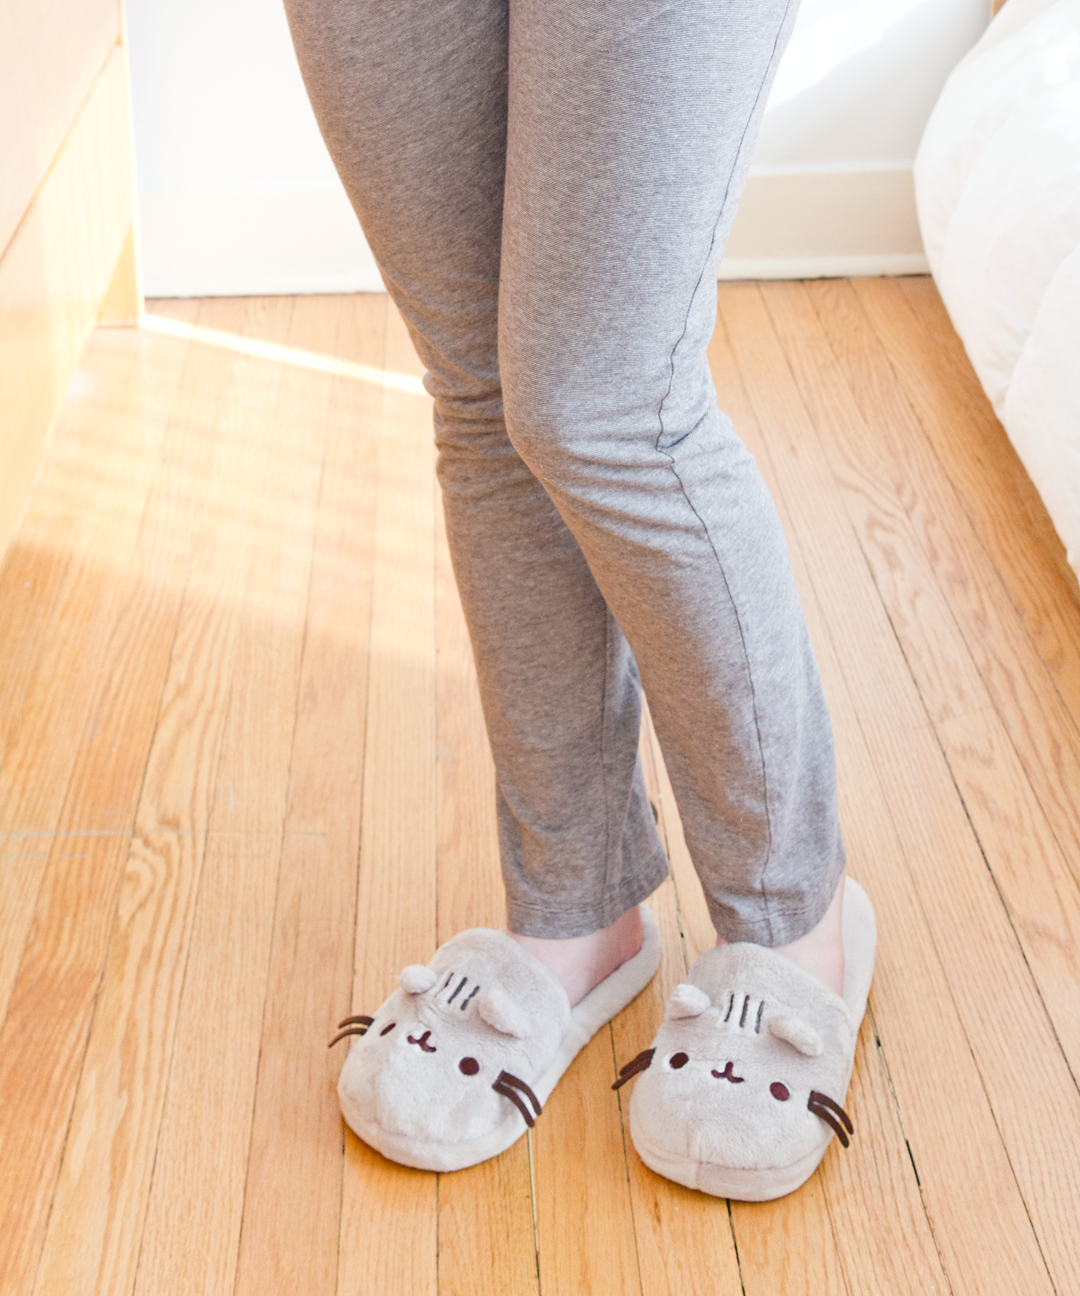 Slippers for Girls - Buy Stylish Slippers for Girls